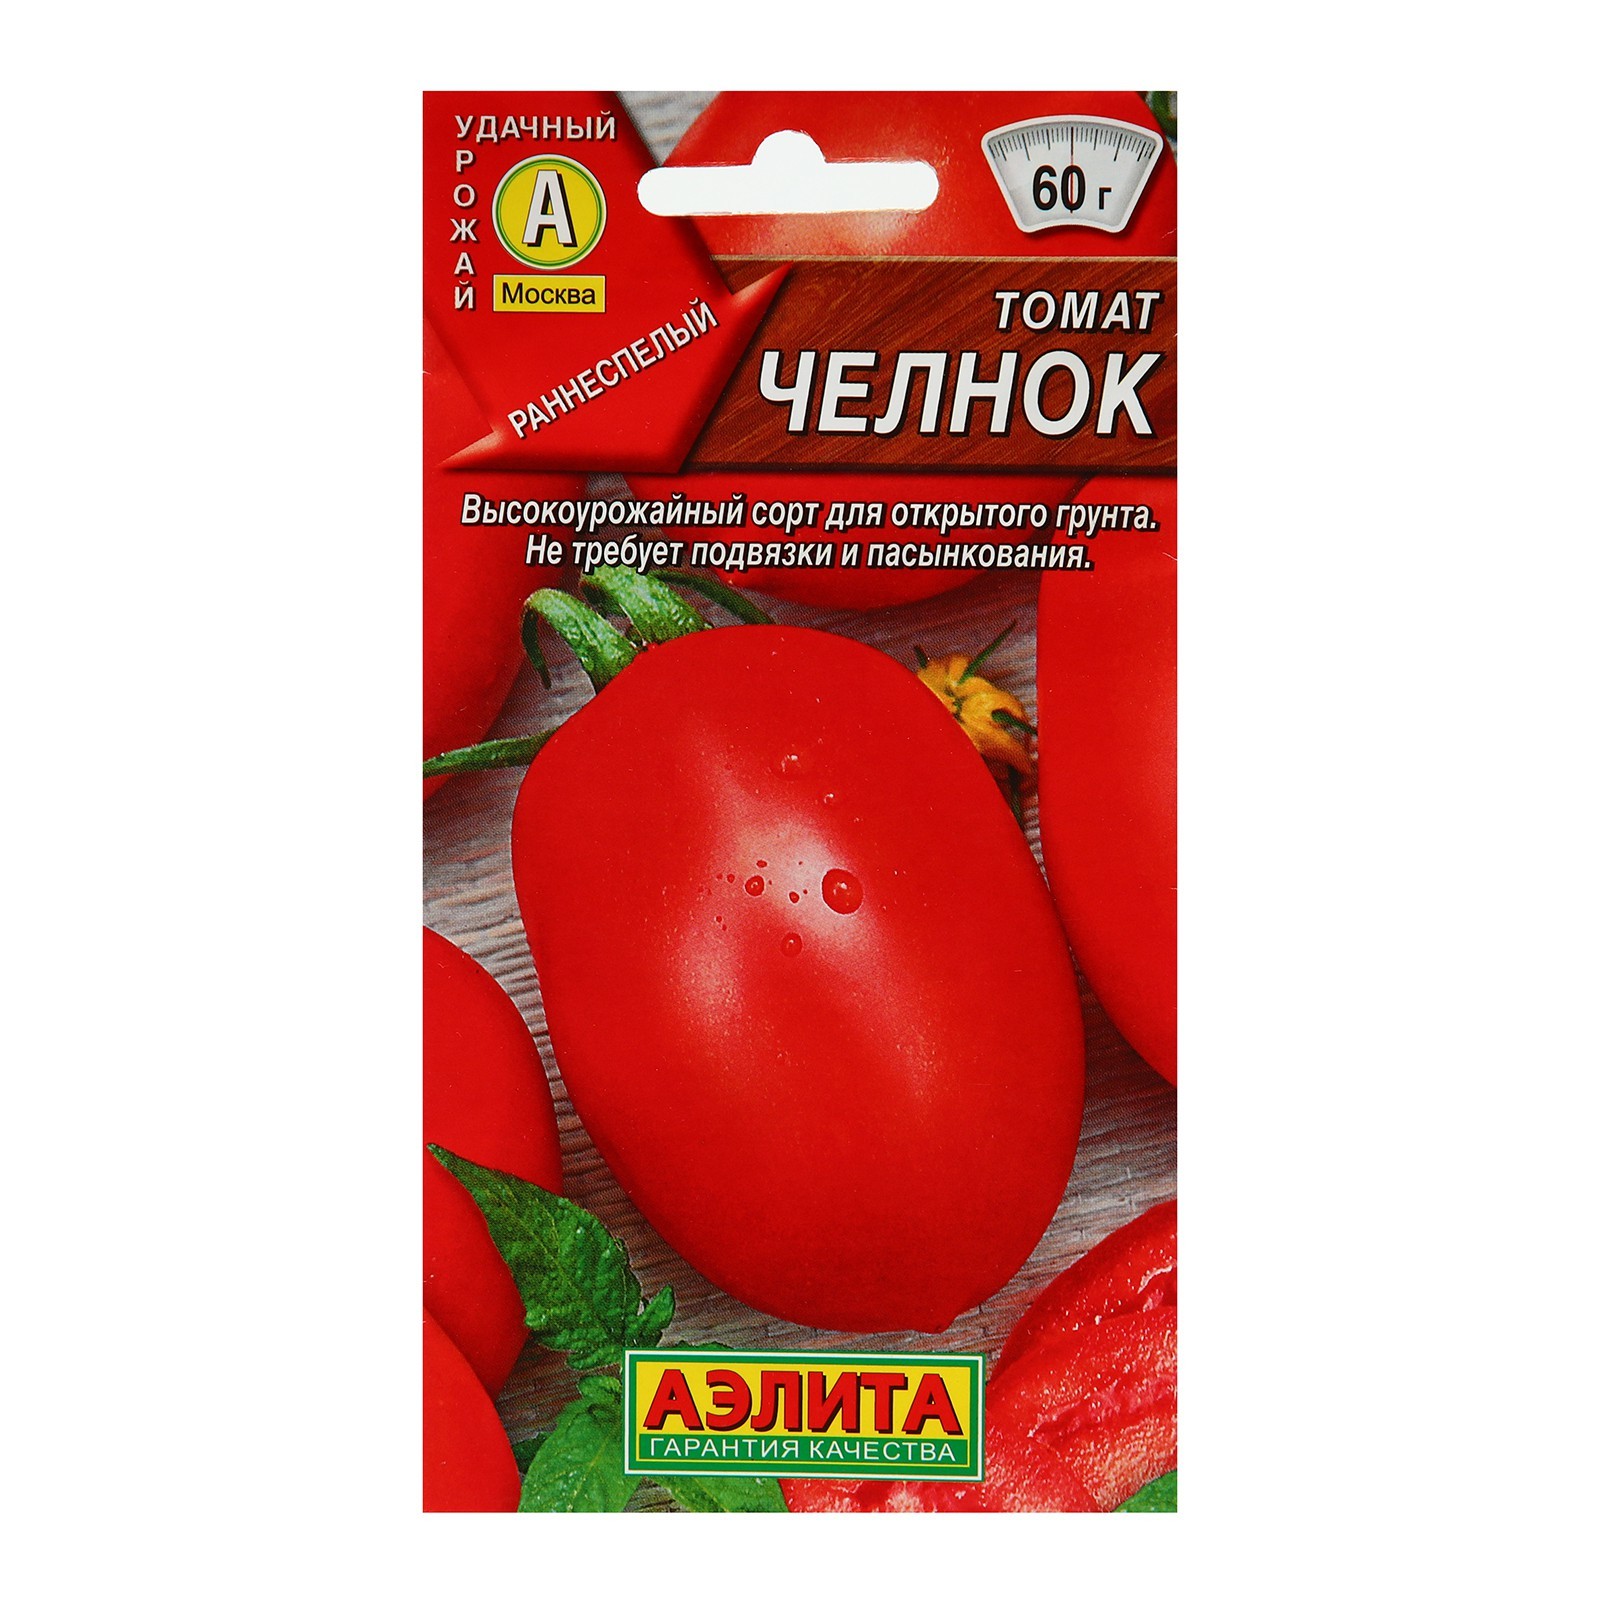 Семена томат челнок. Семена томат челнок, 20 шт. Уральский Дачник. Семена томат челнок 0,05г белая упаковка ваше хозяйство.